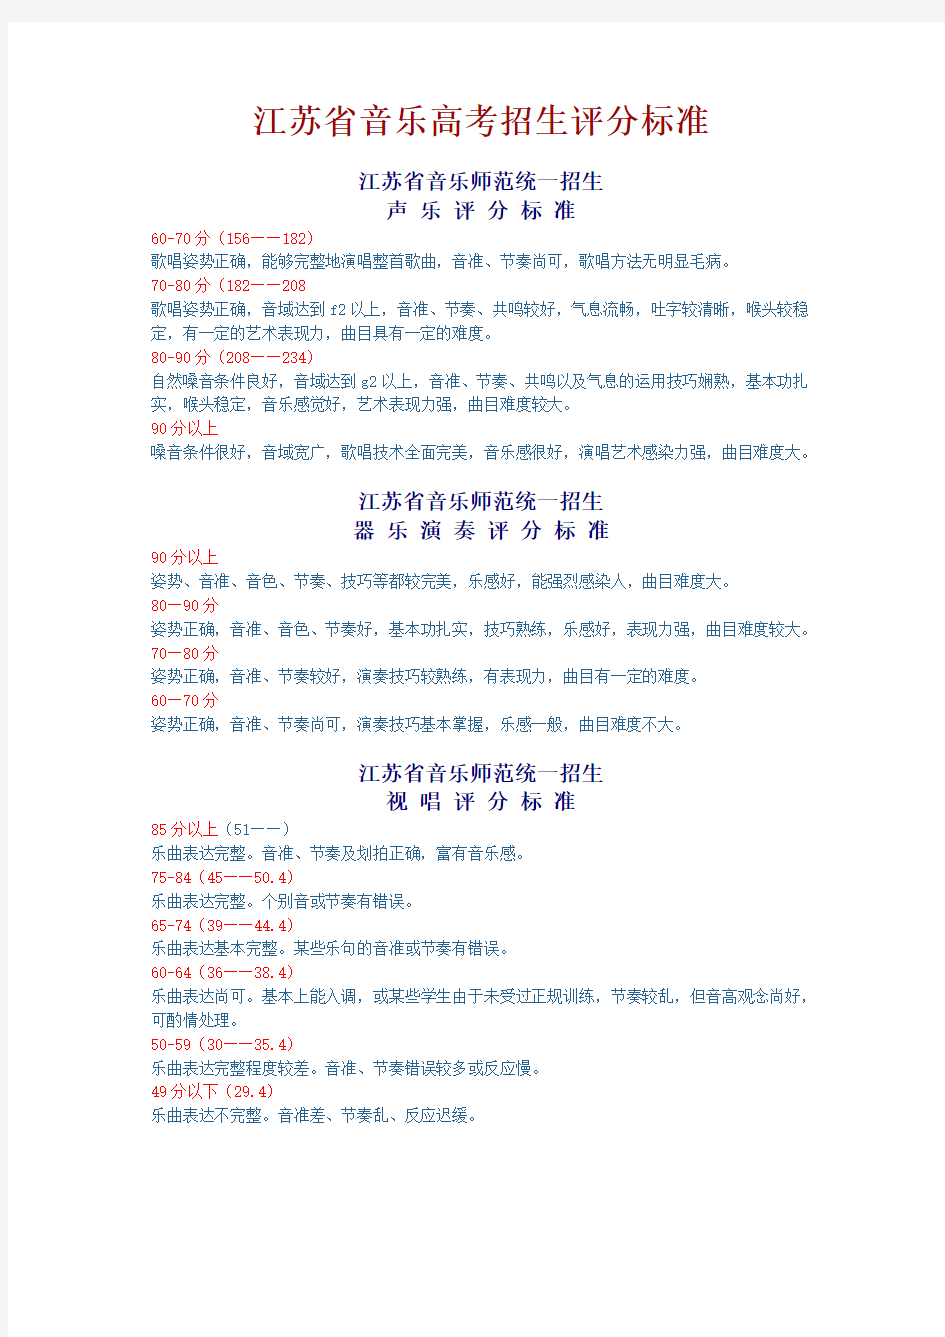 江苏省音乐考试评分标准